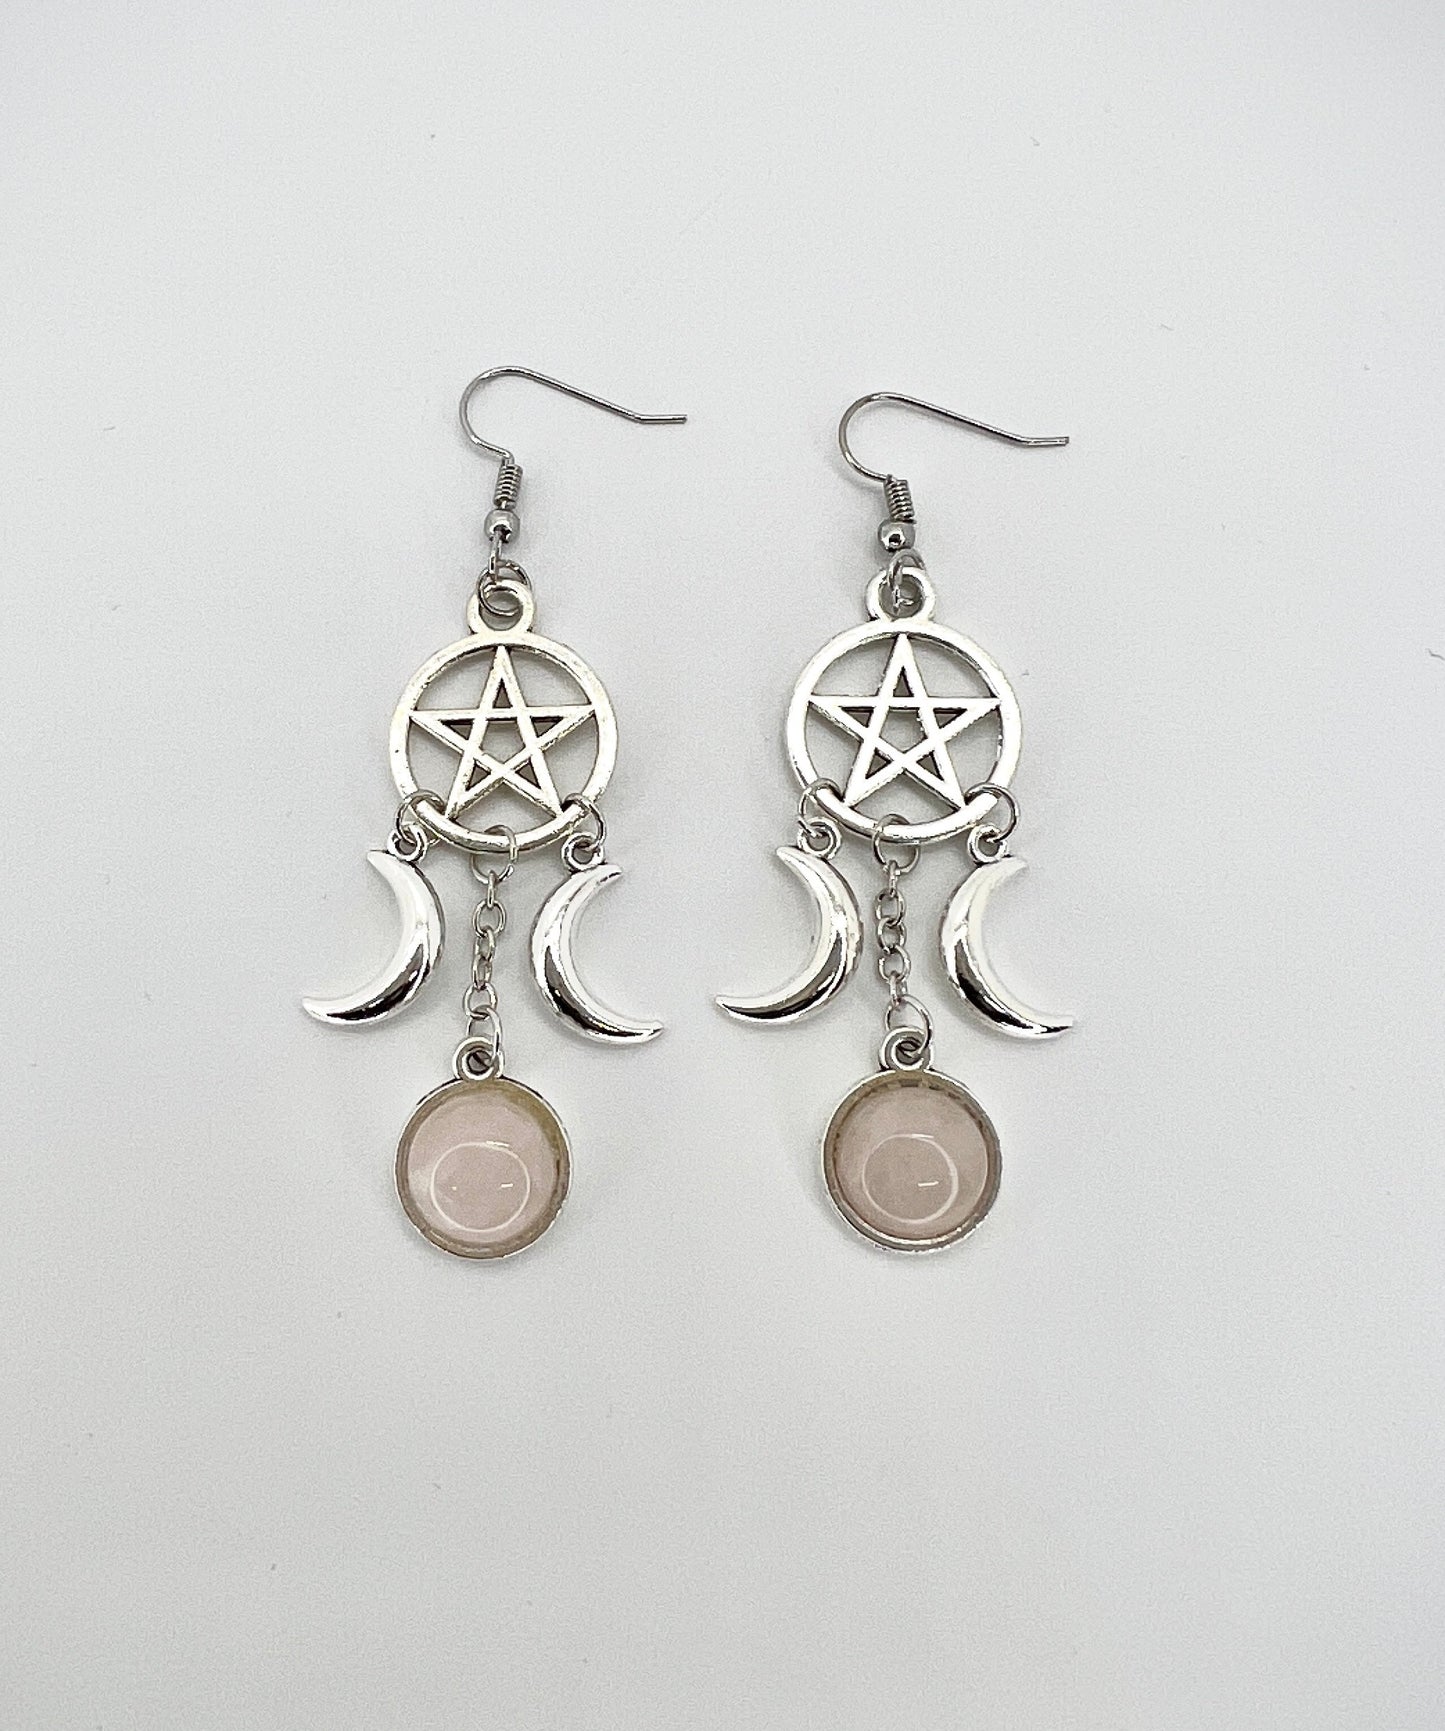 tripple goddess earrings with pentagram symbol and rose quartz